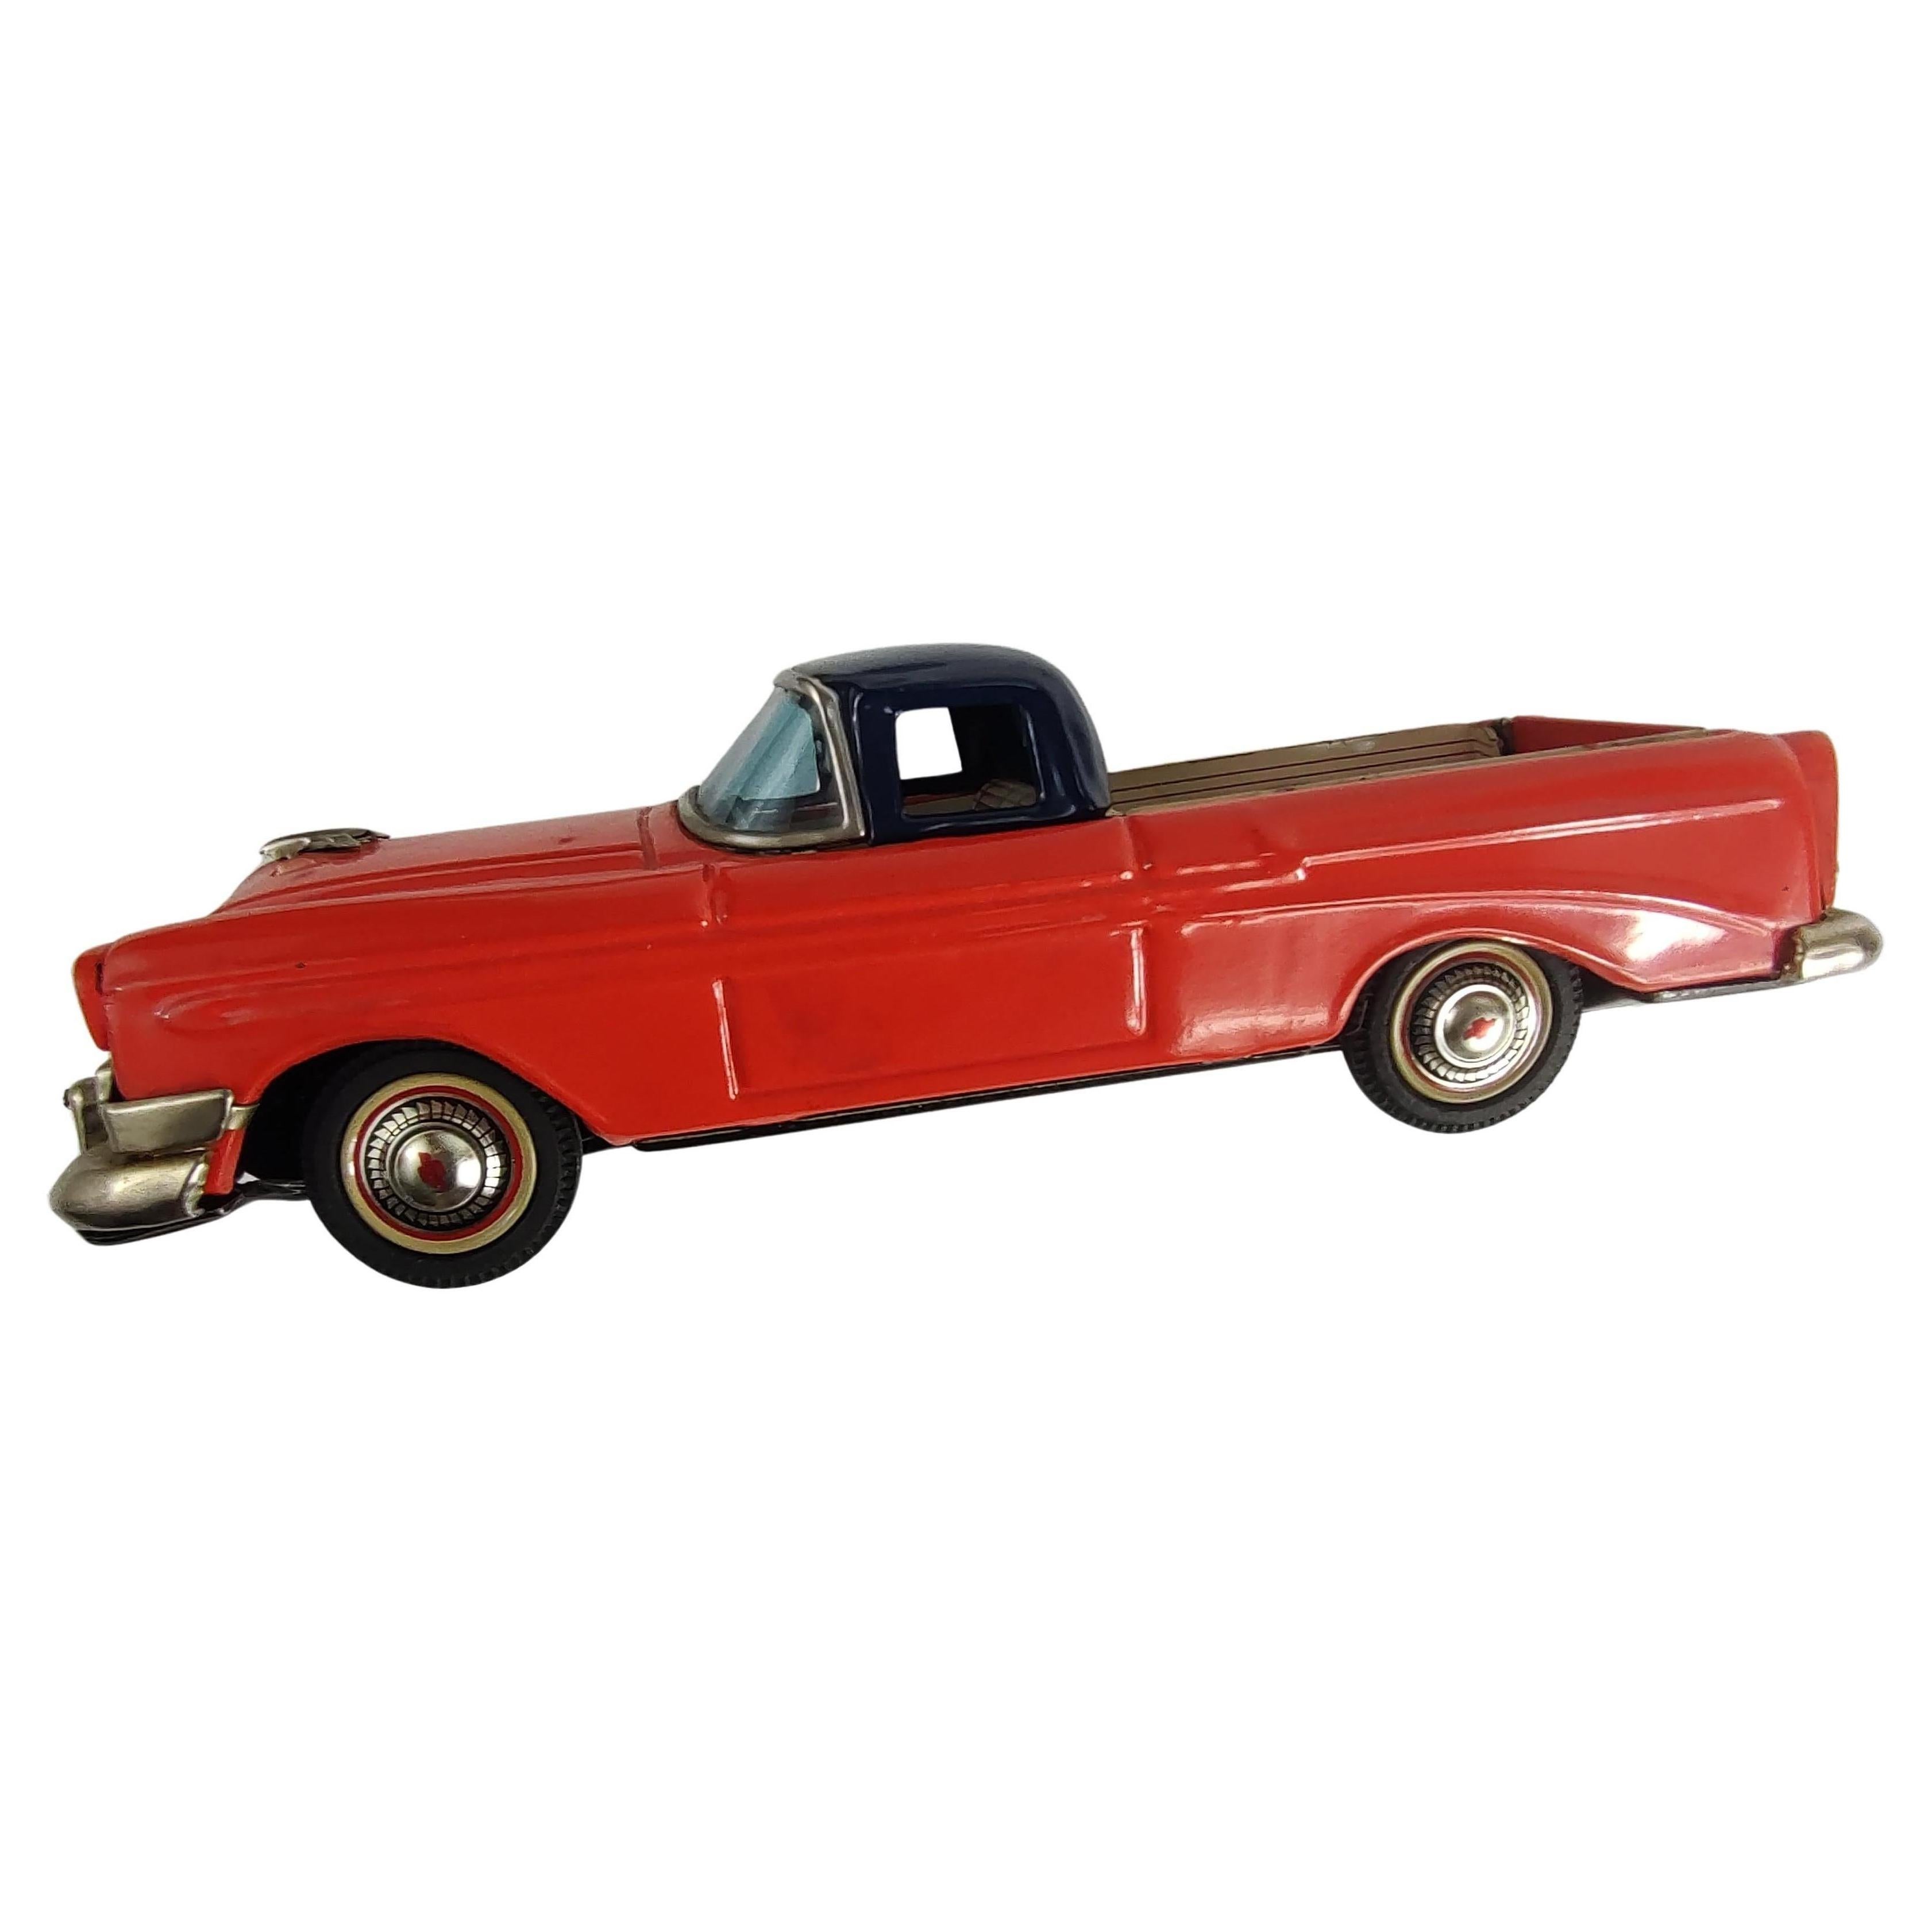 Fantastischer Reibungsmotor und Zinn-Liho-Körper in ausgezeichnetem Vintage-Zustand. C 1956 Chevrolet El Camino in Rot und Schwarz mit abklappbarer Heckklappe. Japaner aus der Mitte der fünfziger Jahre. Glaube, dass dies ein schwer zu findendes